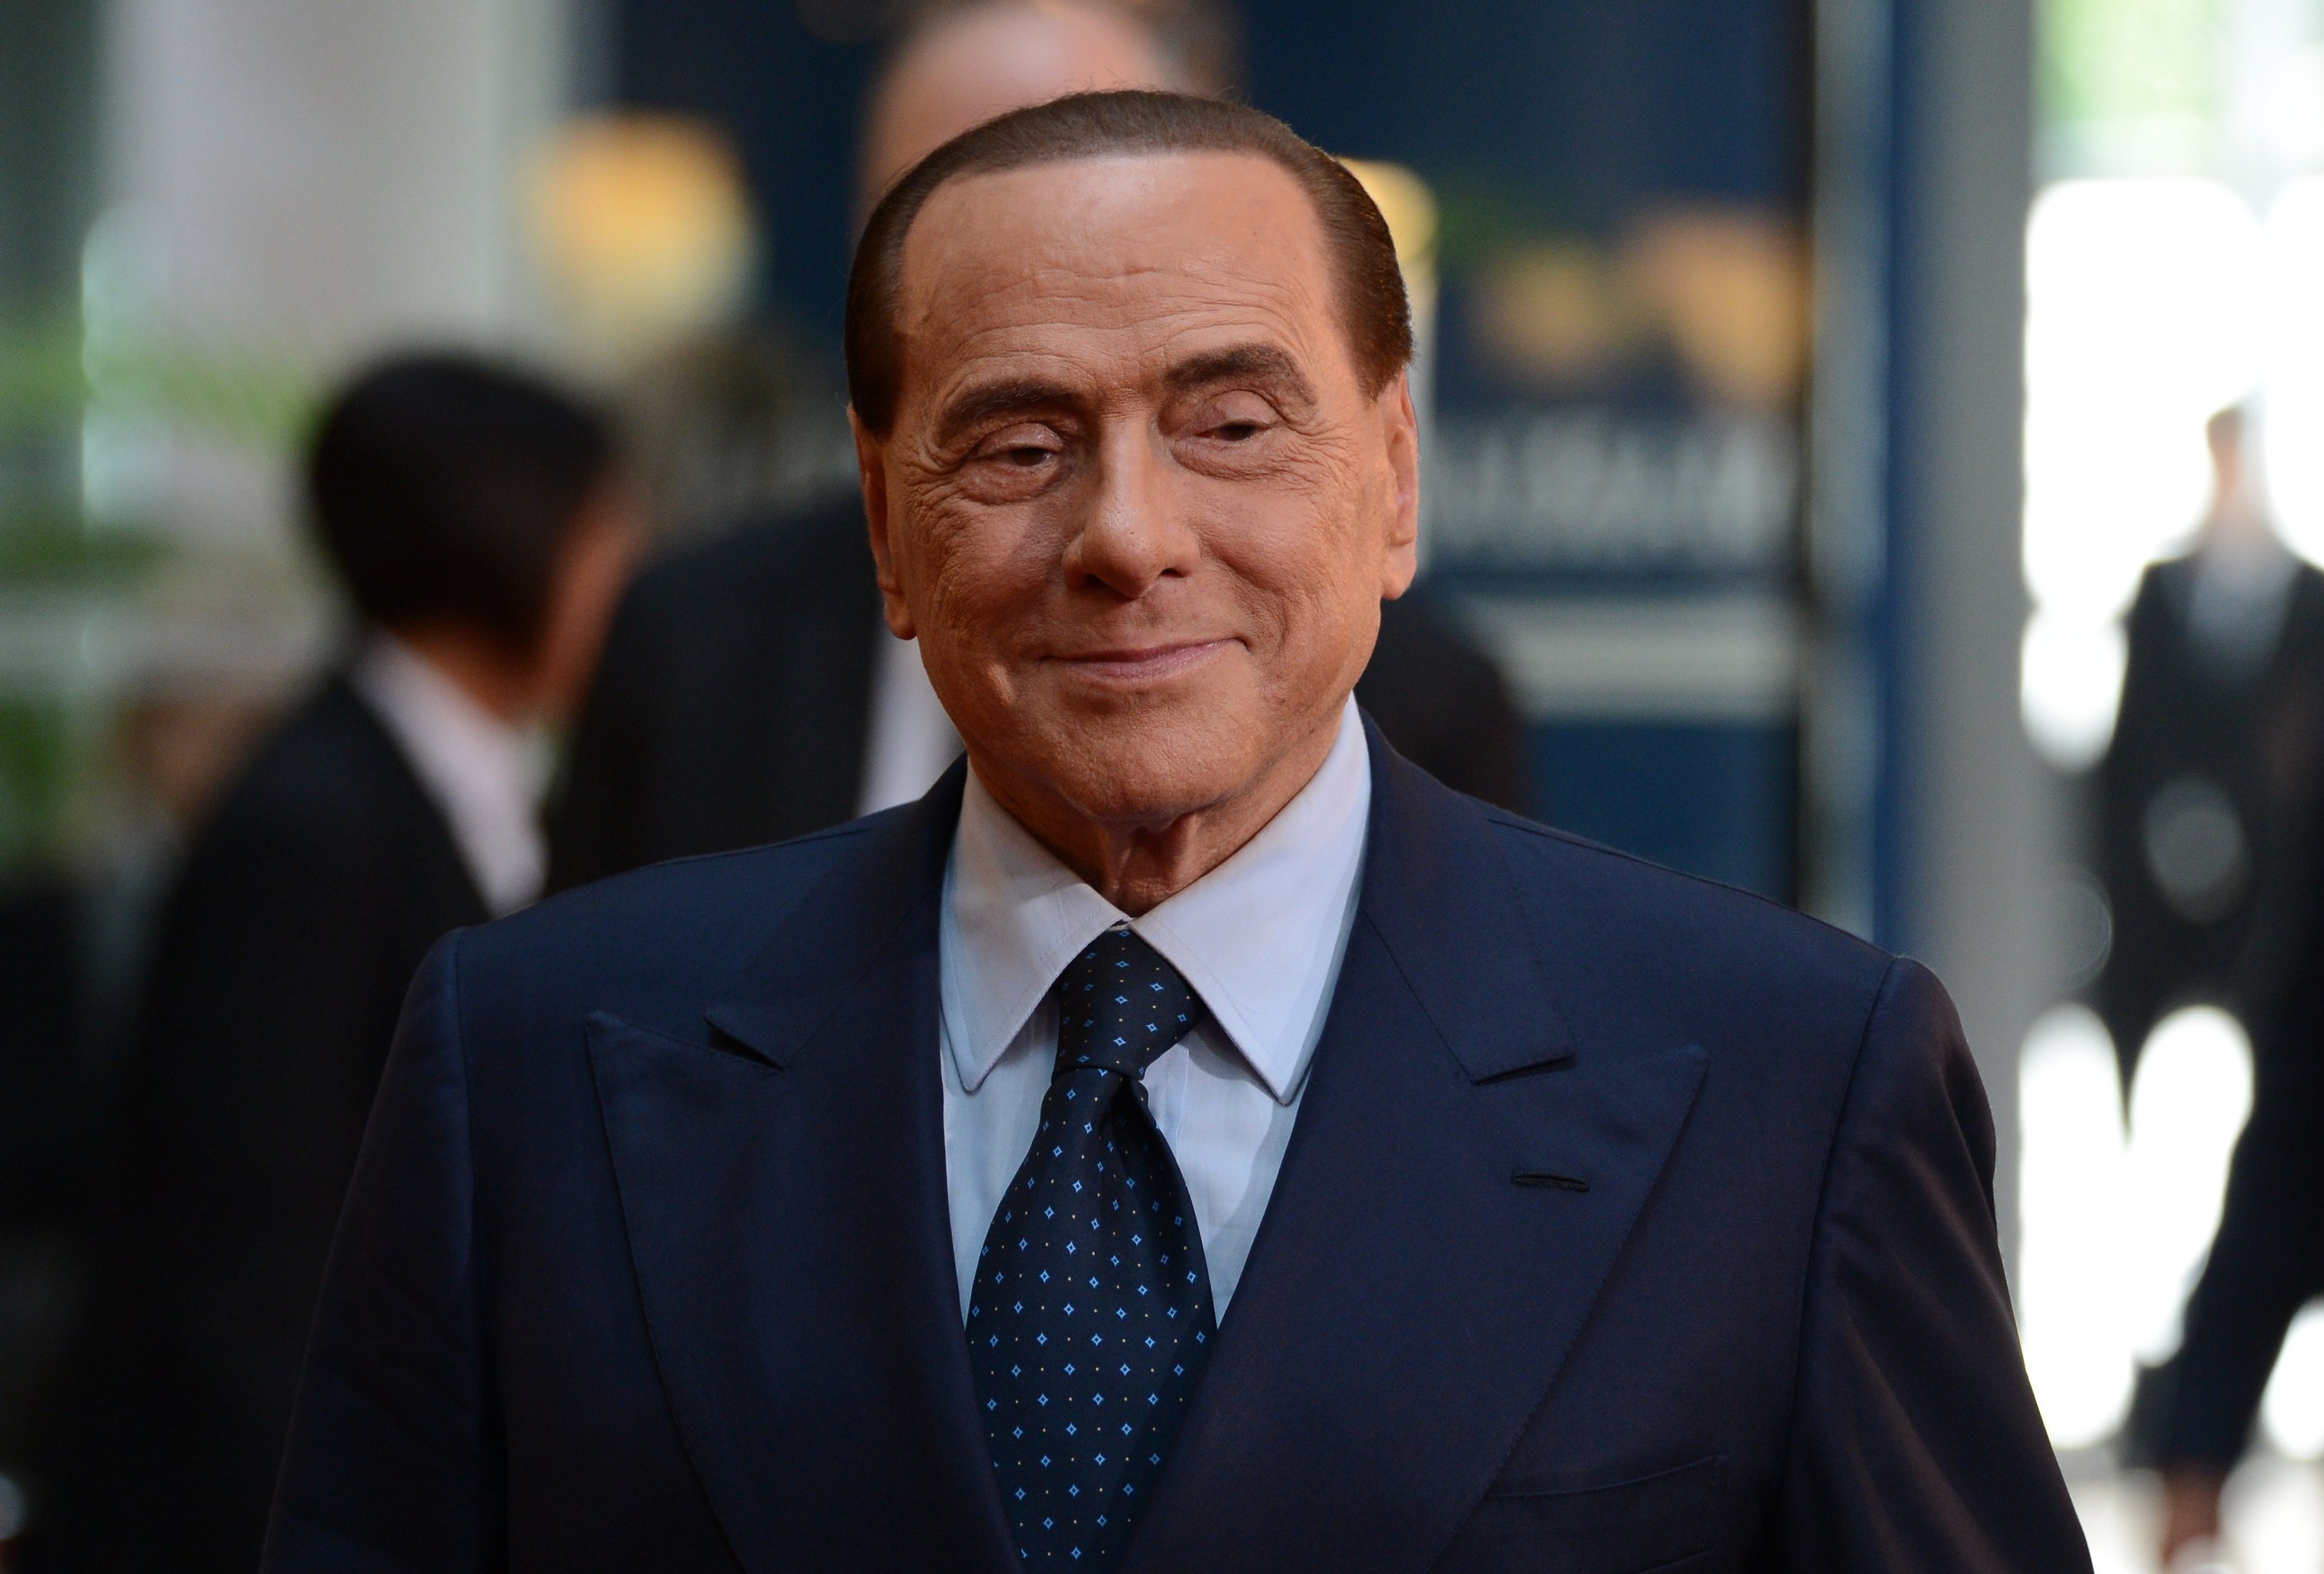 Бывший председатель Совета министров Италии Сильвио Берлускони